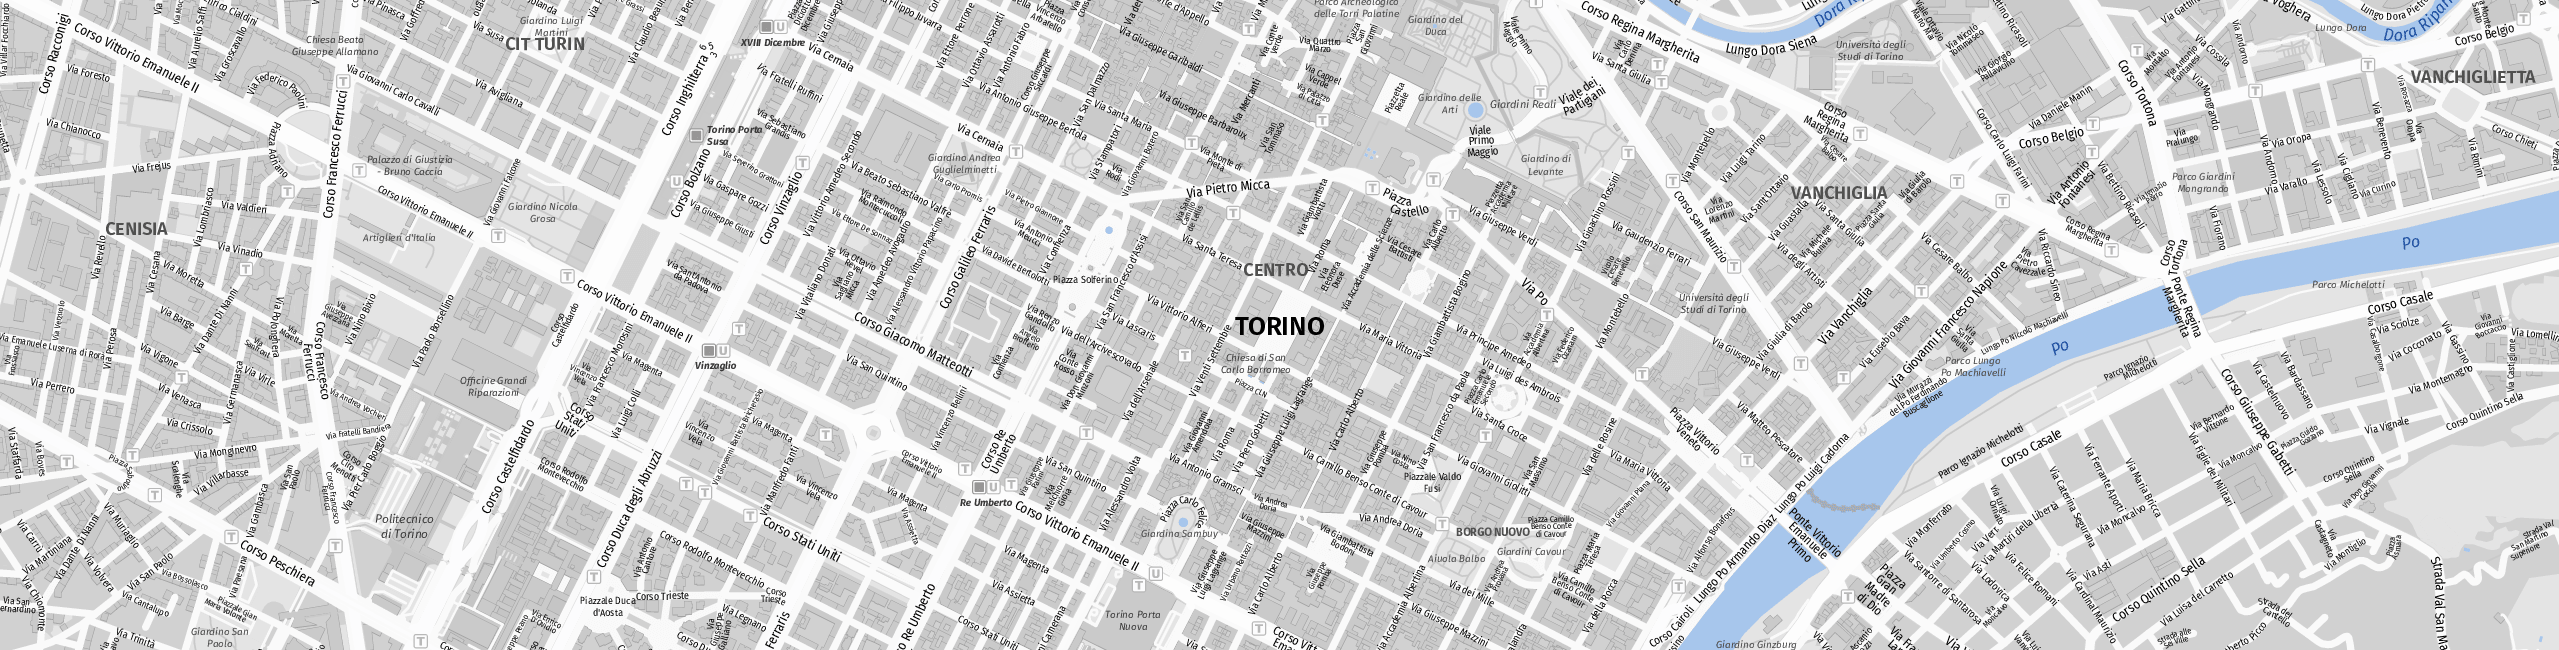 Stadtplan Torino zum Downloaden.